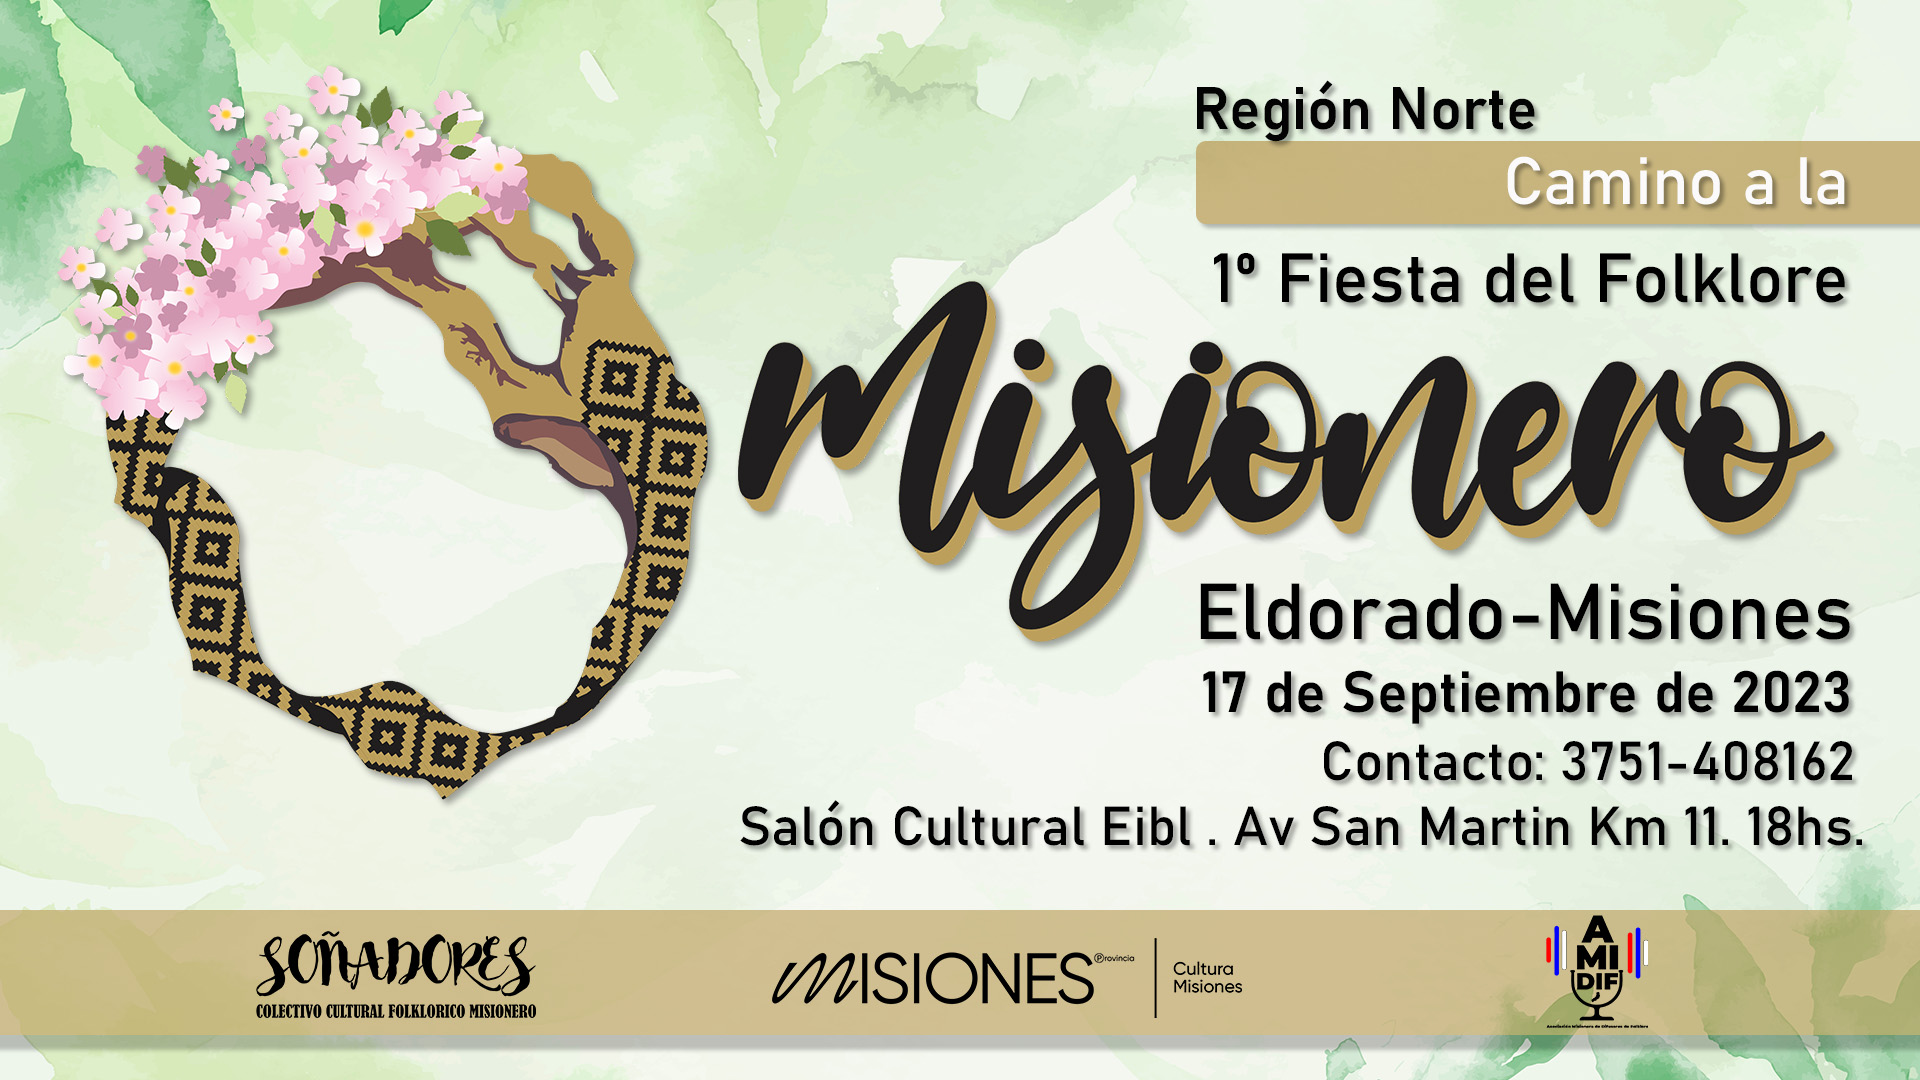 Camino a la Fiesta del Folklore Misionero: La región Norte es la encargada de iniciar la preselección